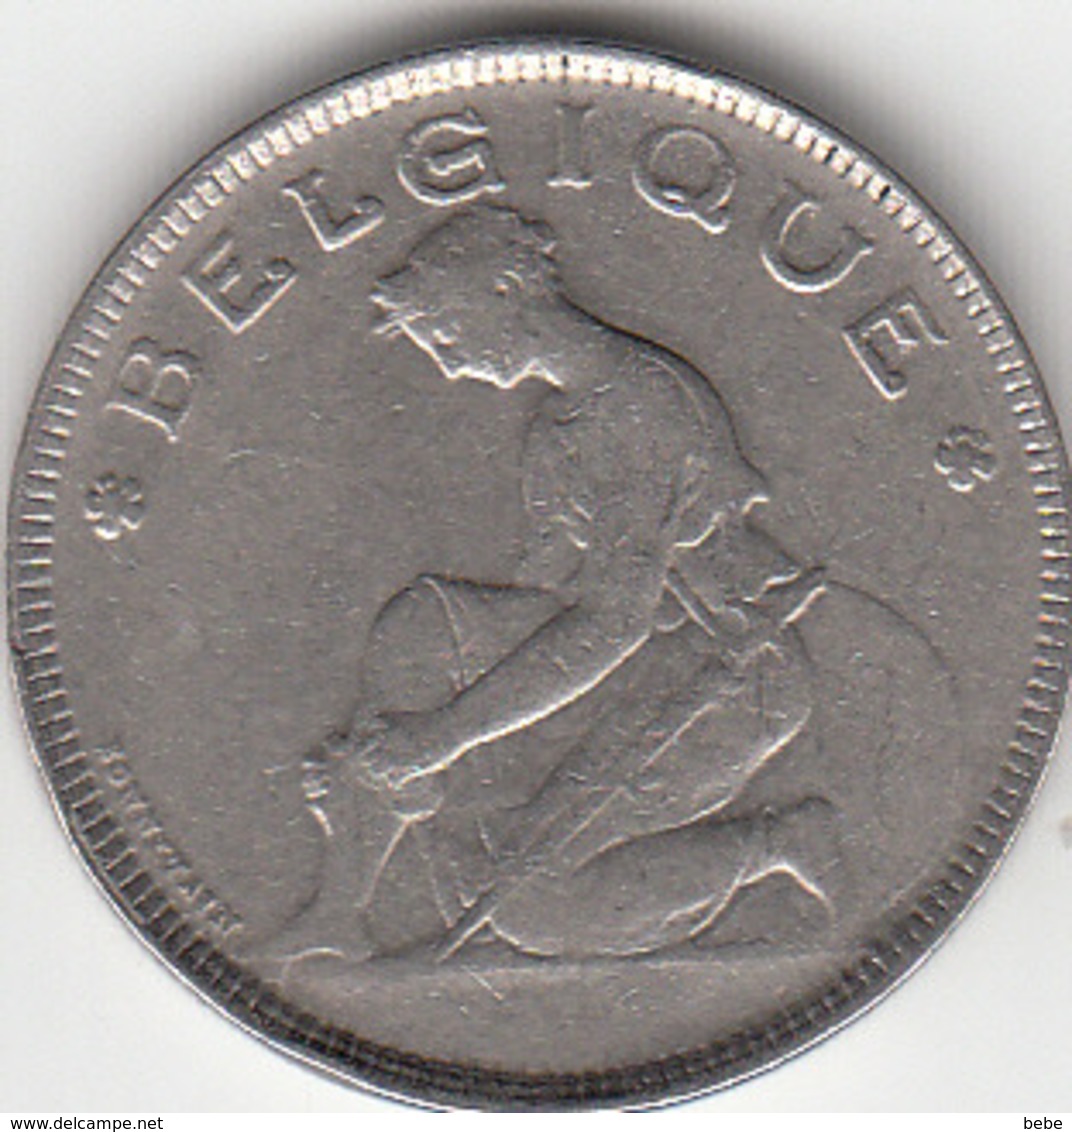 PIECE DE 2 FR (BON POUR) 1923 EN BON ETAT - 2 Francs